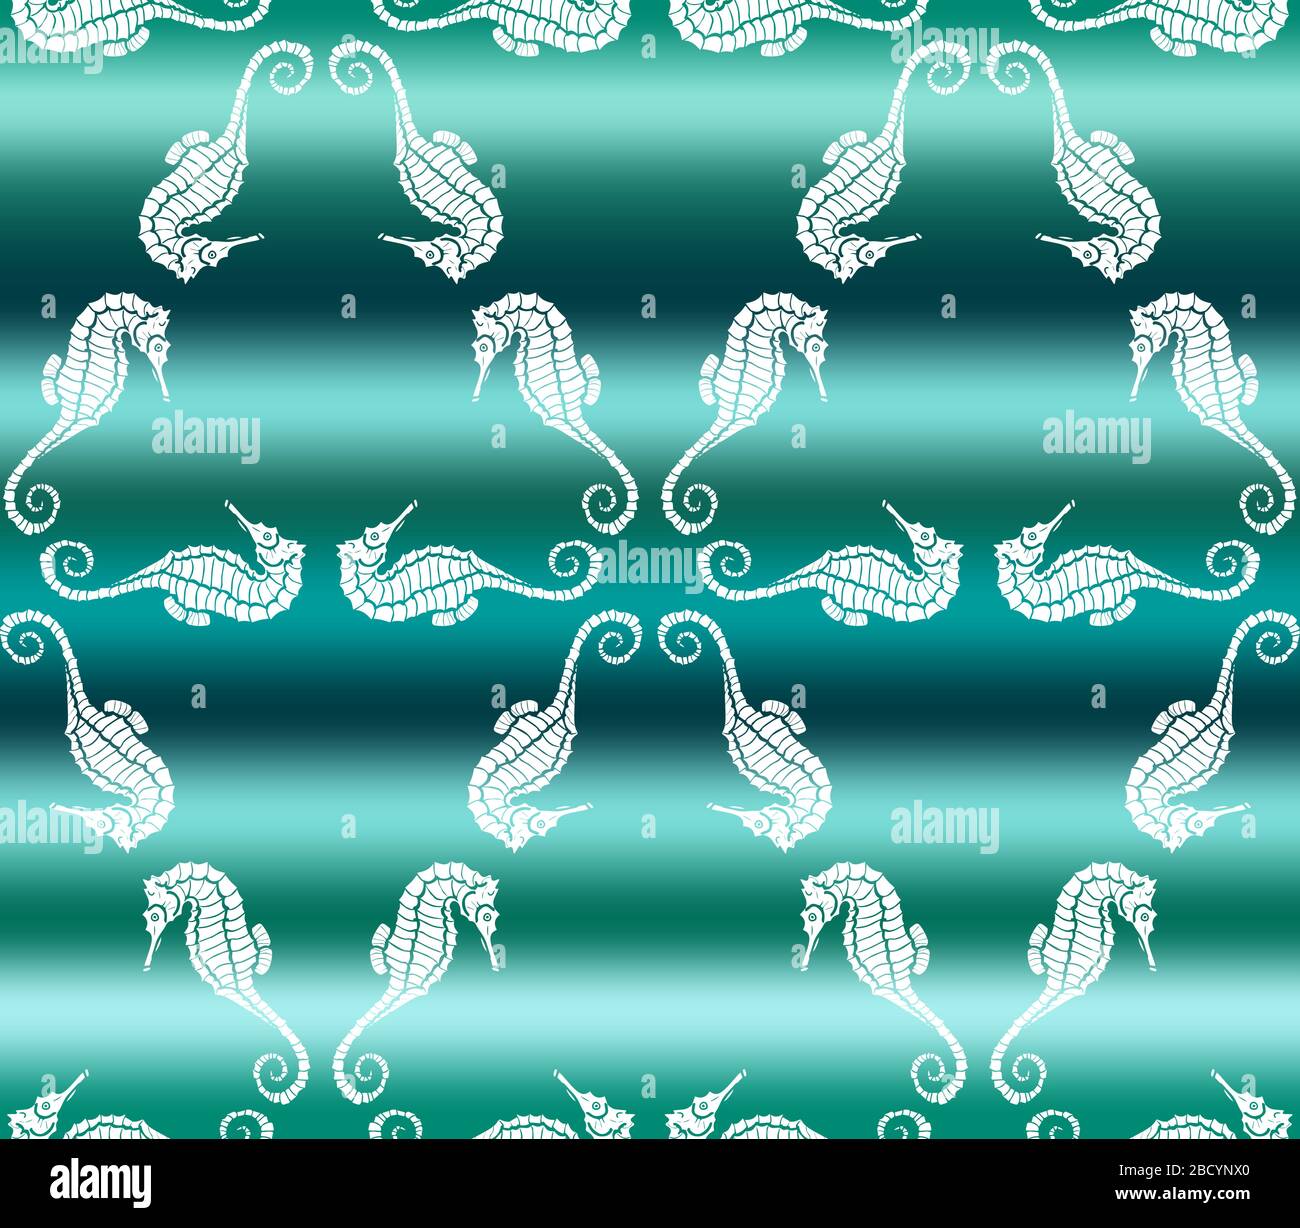 Illustration vectorielle de l'hippocampe blanc sur fond de l'onde de mer à gradient vert. Motif sans couture avec dragon de mer dessiné à la main Illustration de Vecteur